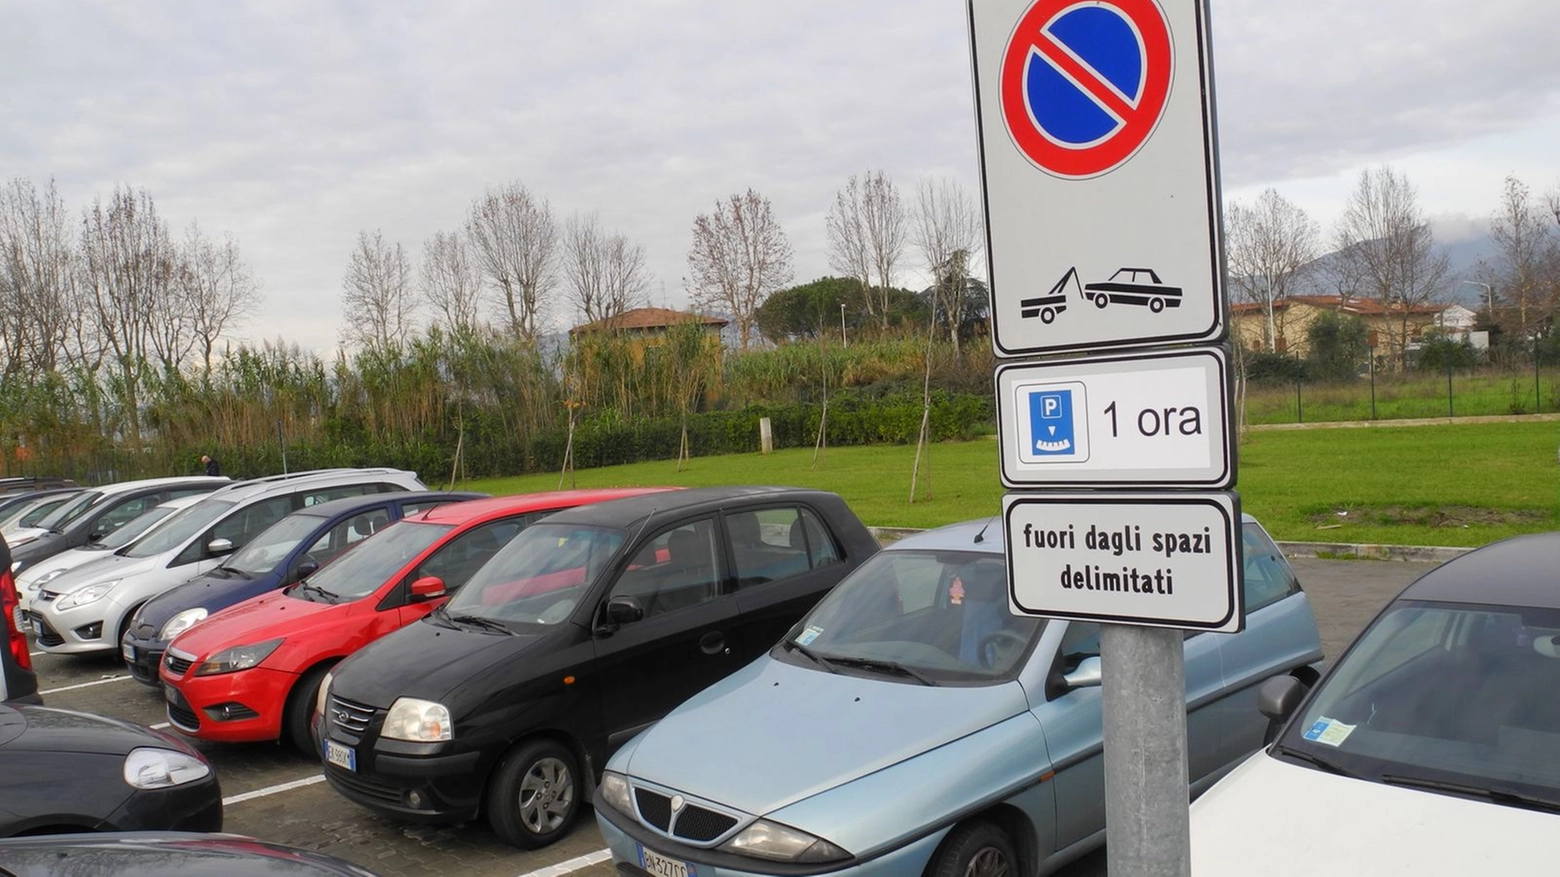 Nuovo ospedale Santo Stefano parcheggio pronto soccorso (foto Attalmi)